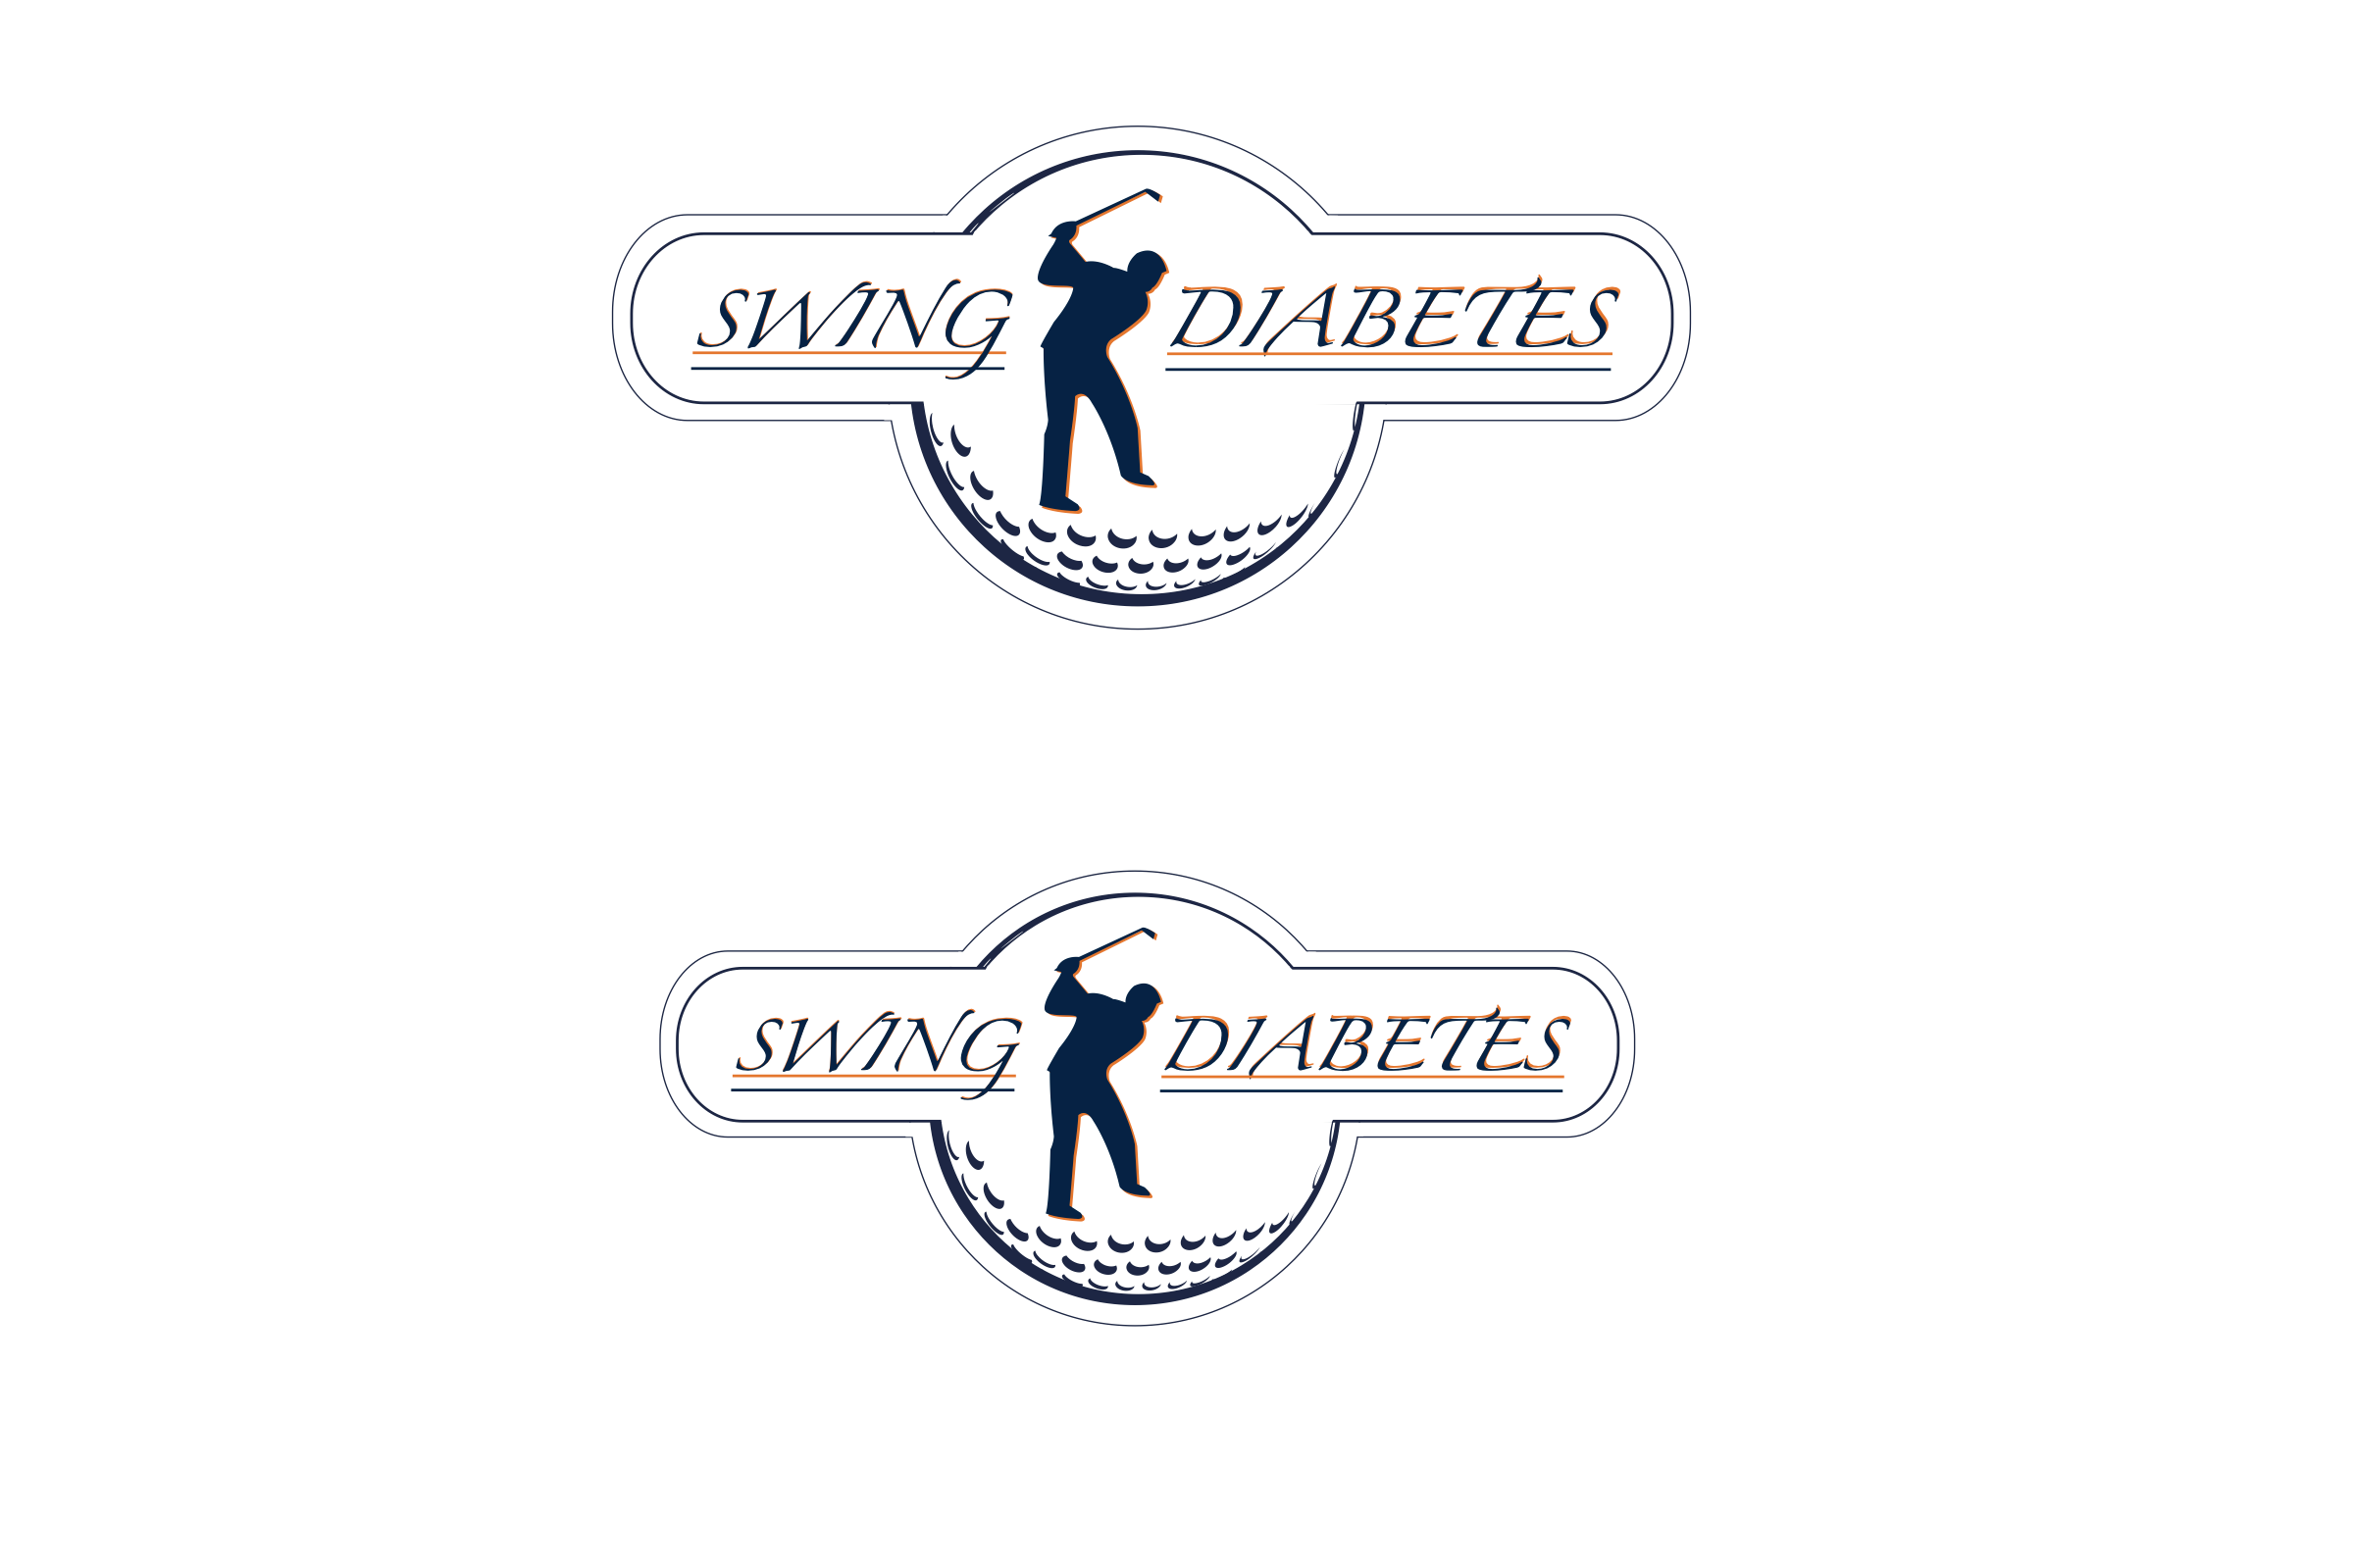 12th Annual Swing 4 Diabetes Golf Tournament